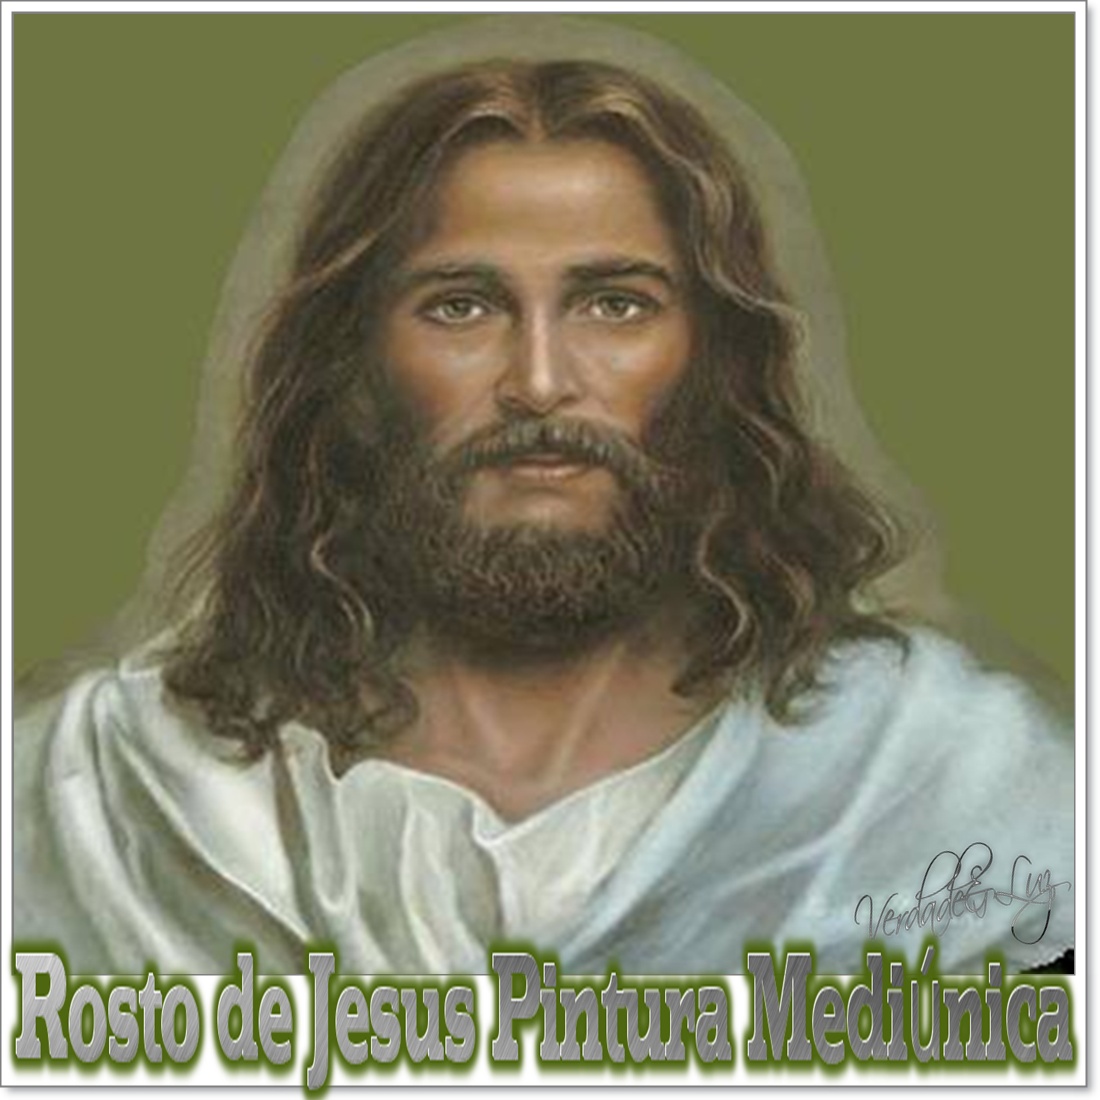 ROSTO DE JESUS